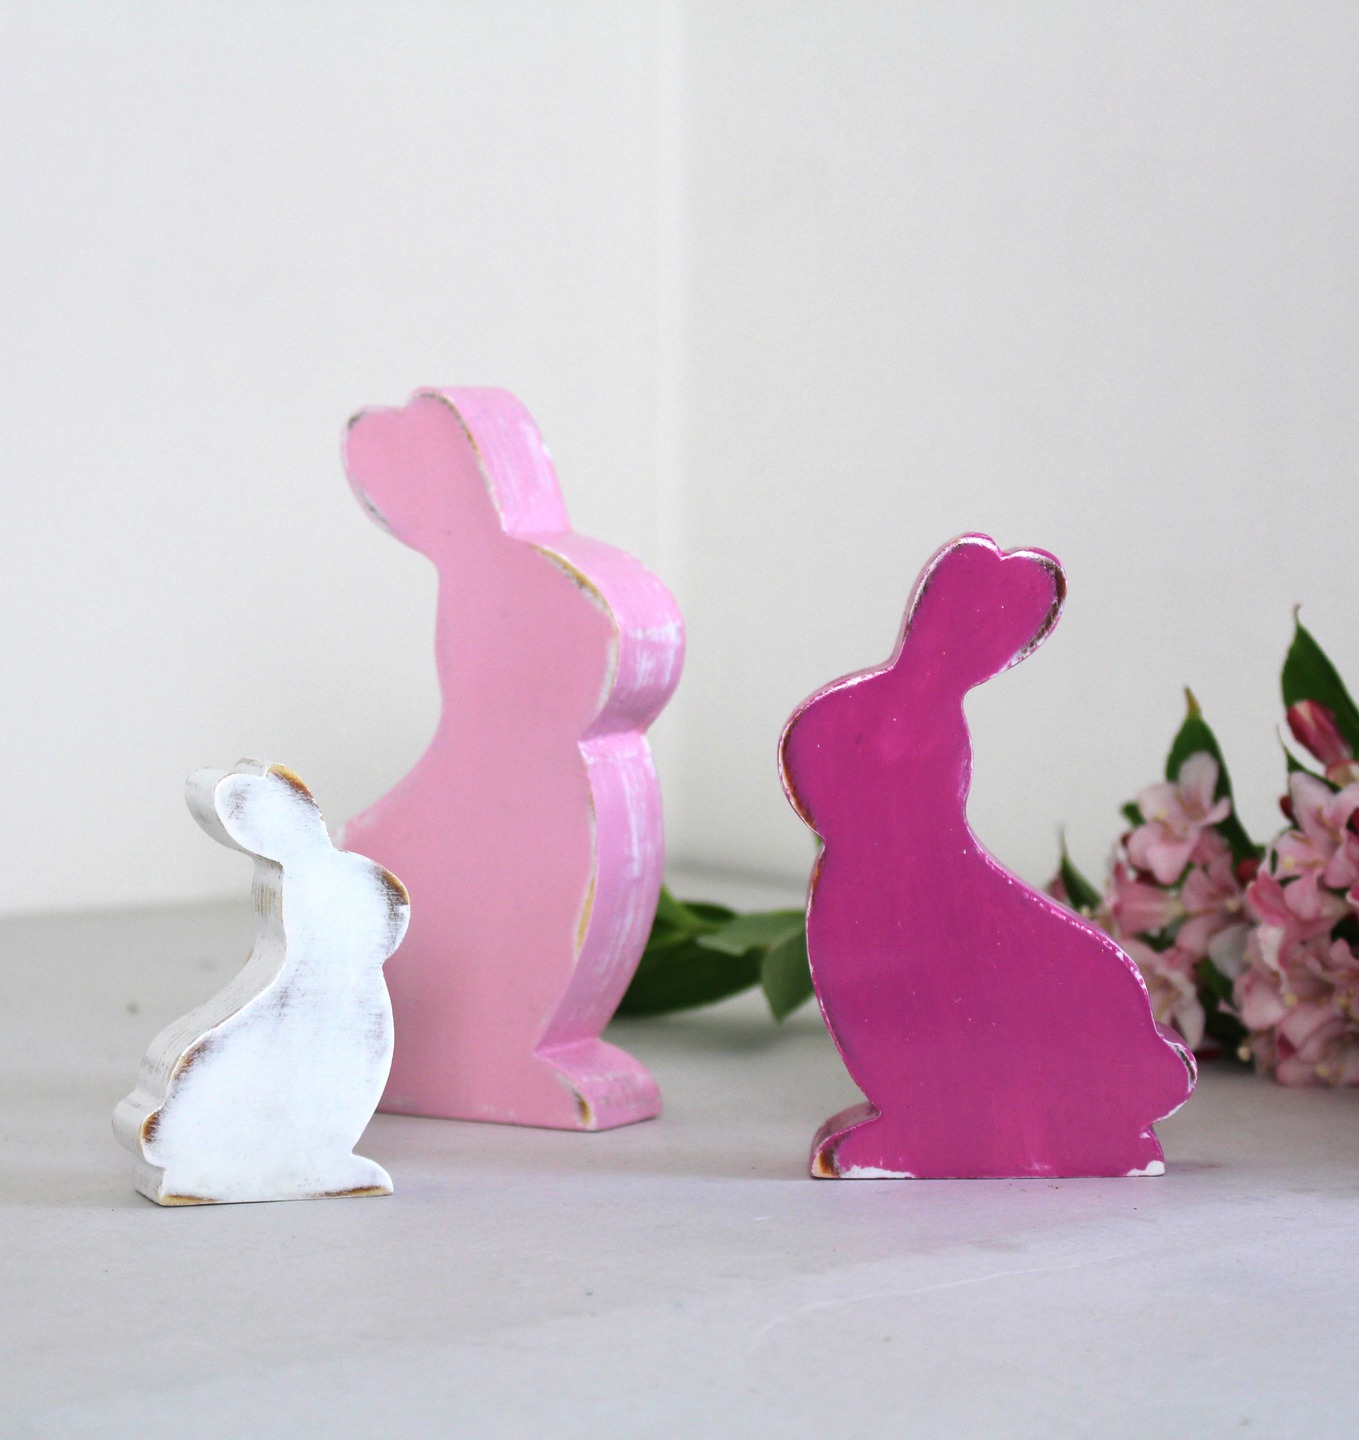 Lot de 3 lapins en bois rose et blanc, patinés.